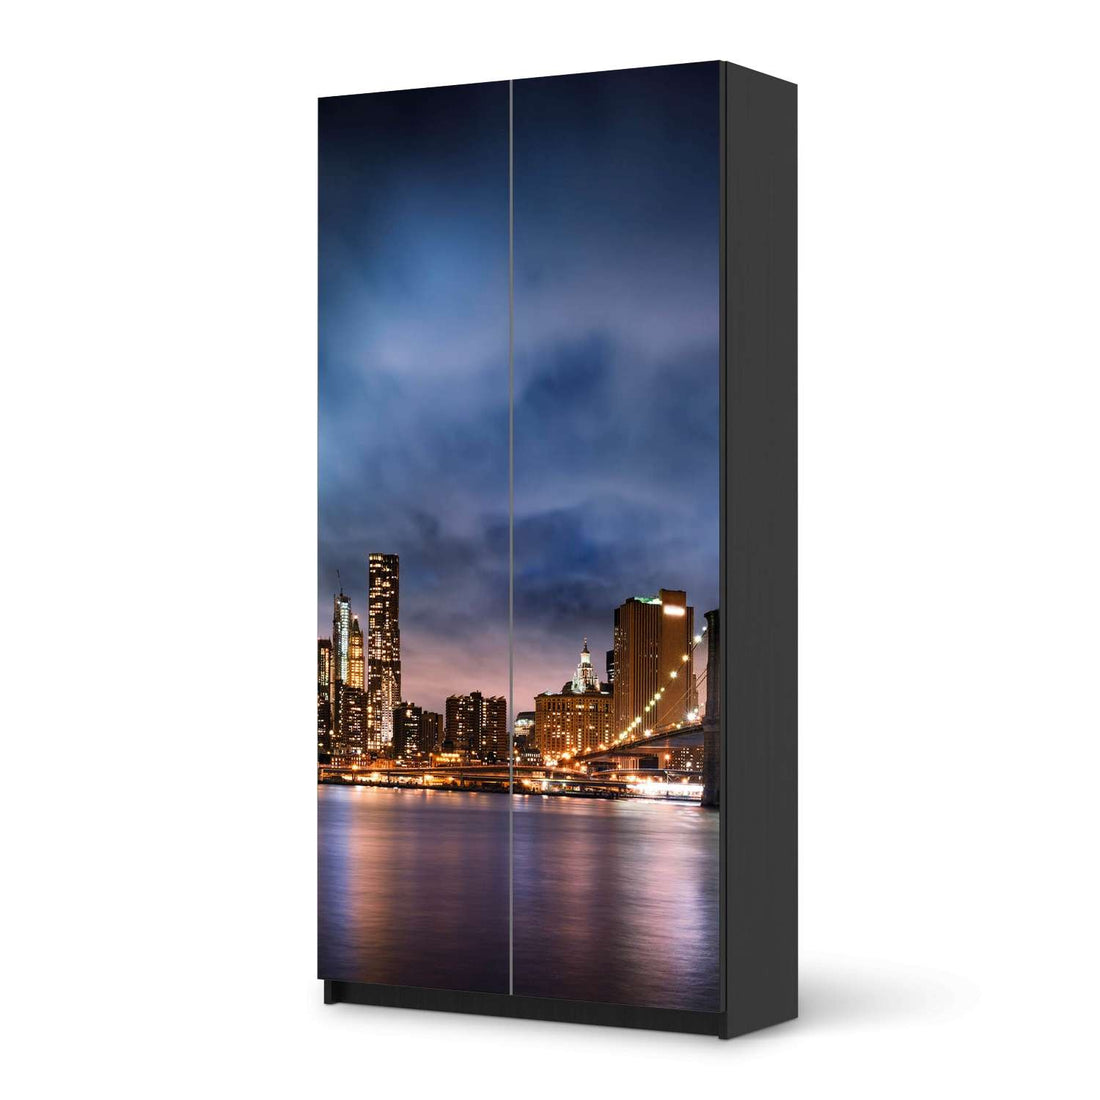 Klebefolie für Möbel Brooklyn Bridge - IKEA Pax Schrank 201 cm Höhe - 2 Türen - schwarz